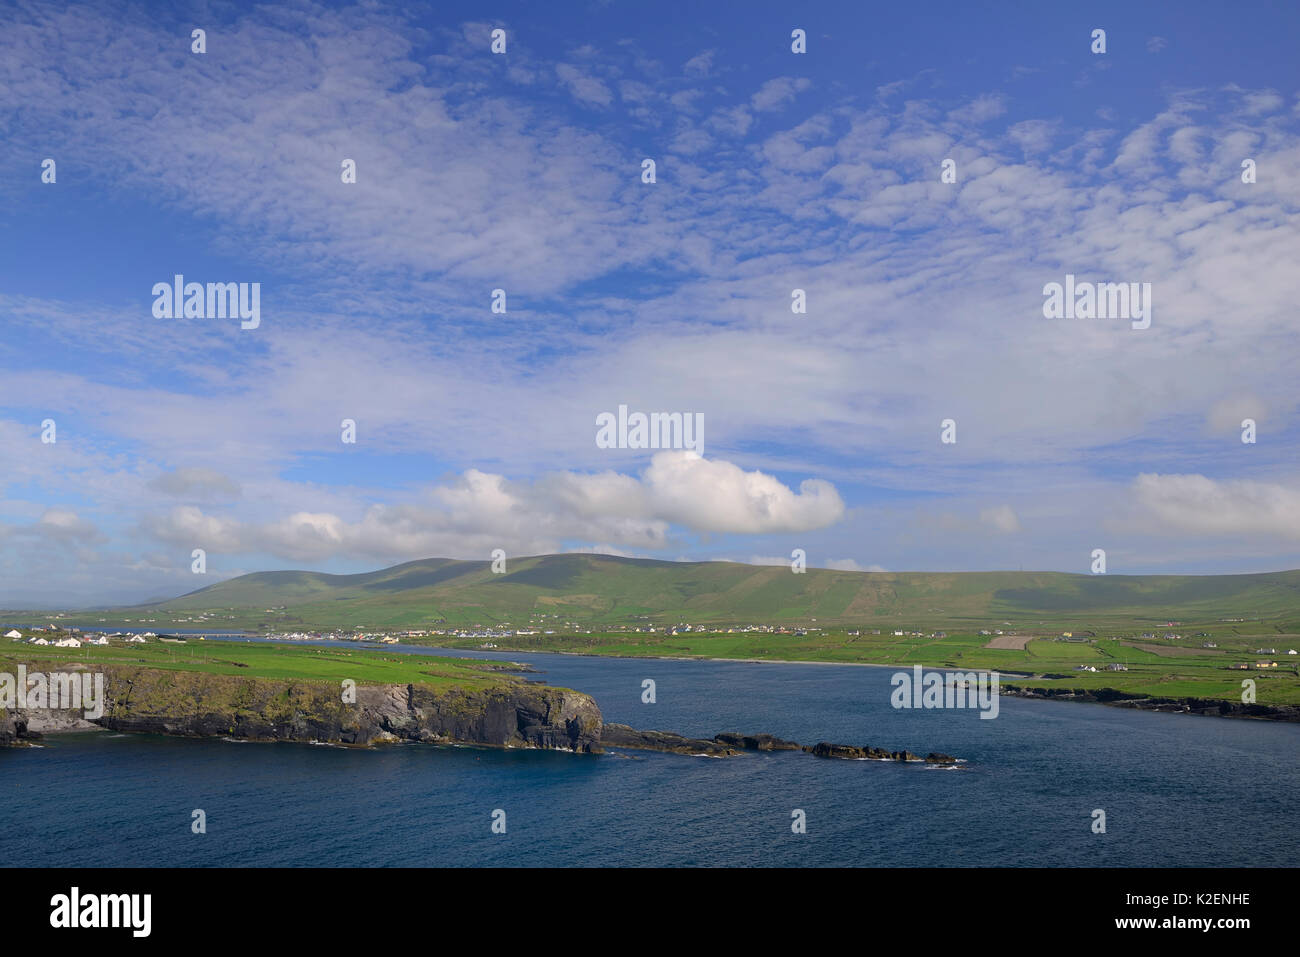 Vista de Foilhomurrin Bay, Isla Caballo, Long Island y cabeceros distantes desde Valencia Island, en el condado de Kerry, República de Irlanda. De junio de 2014. Foto de stock